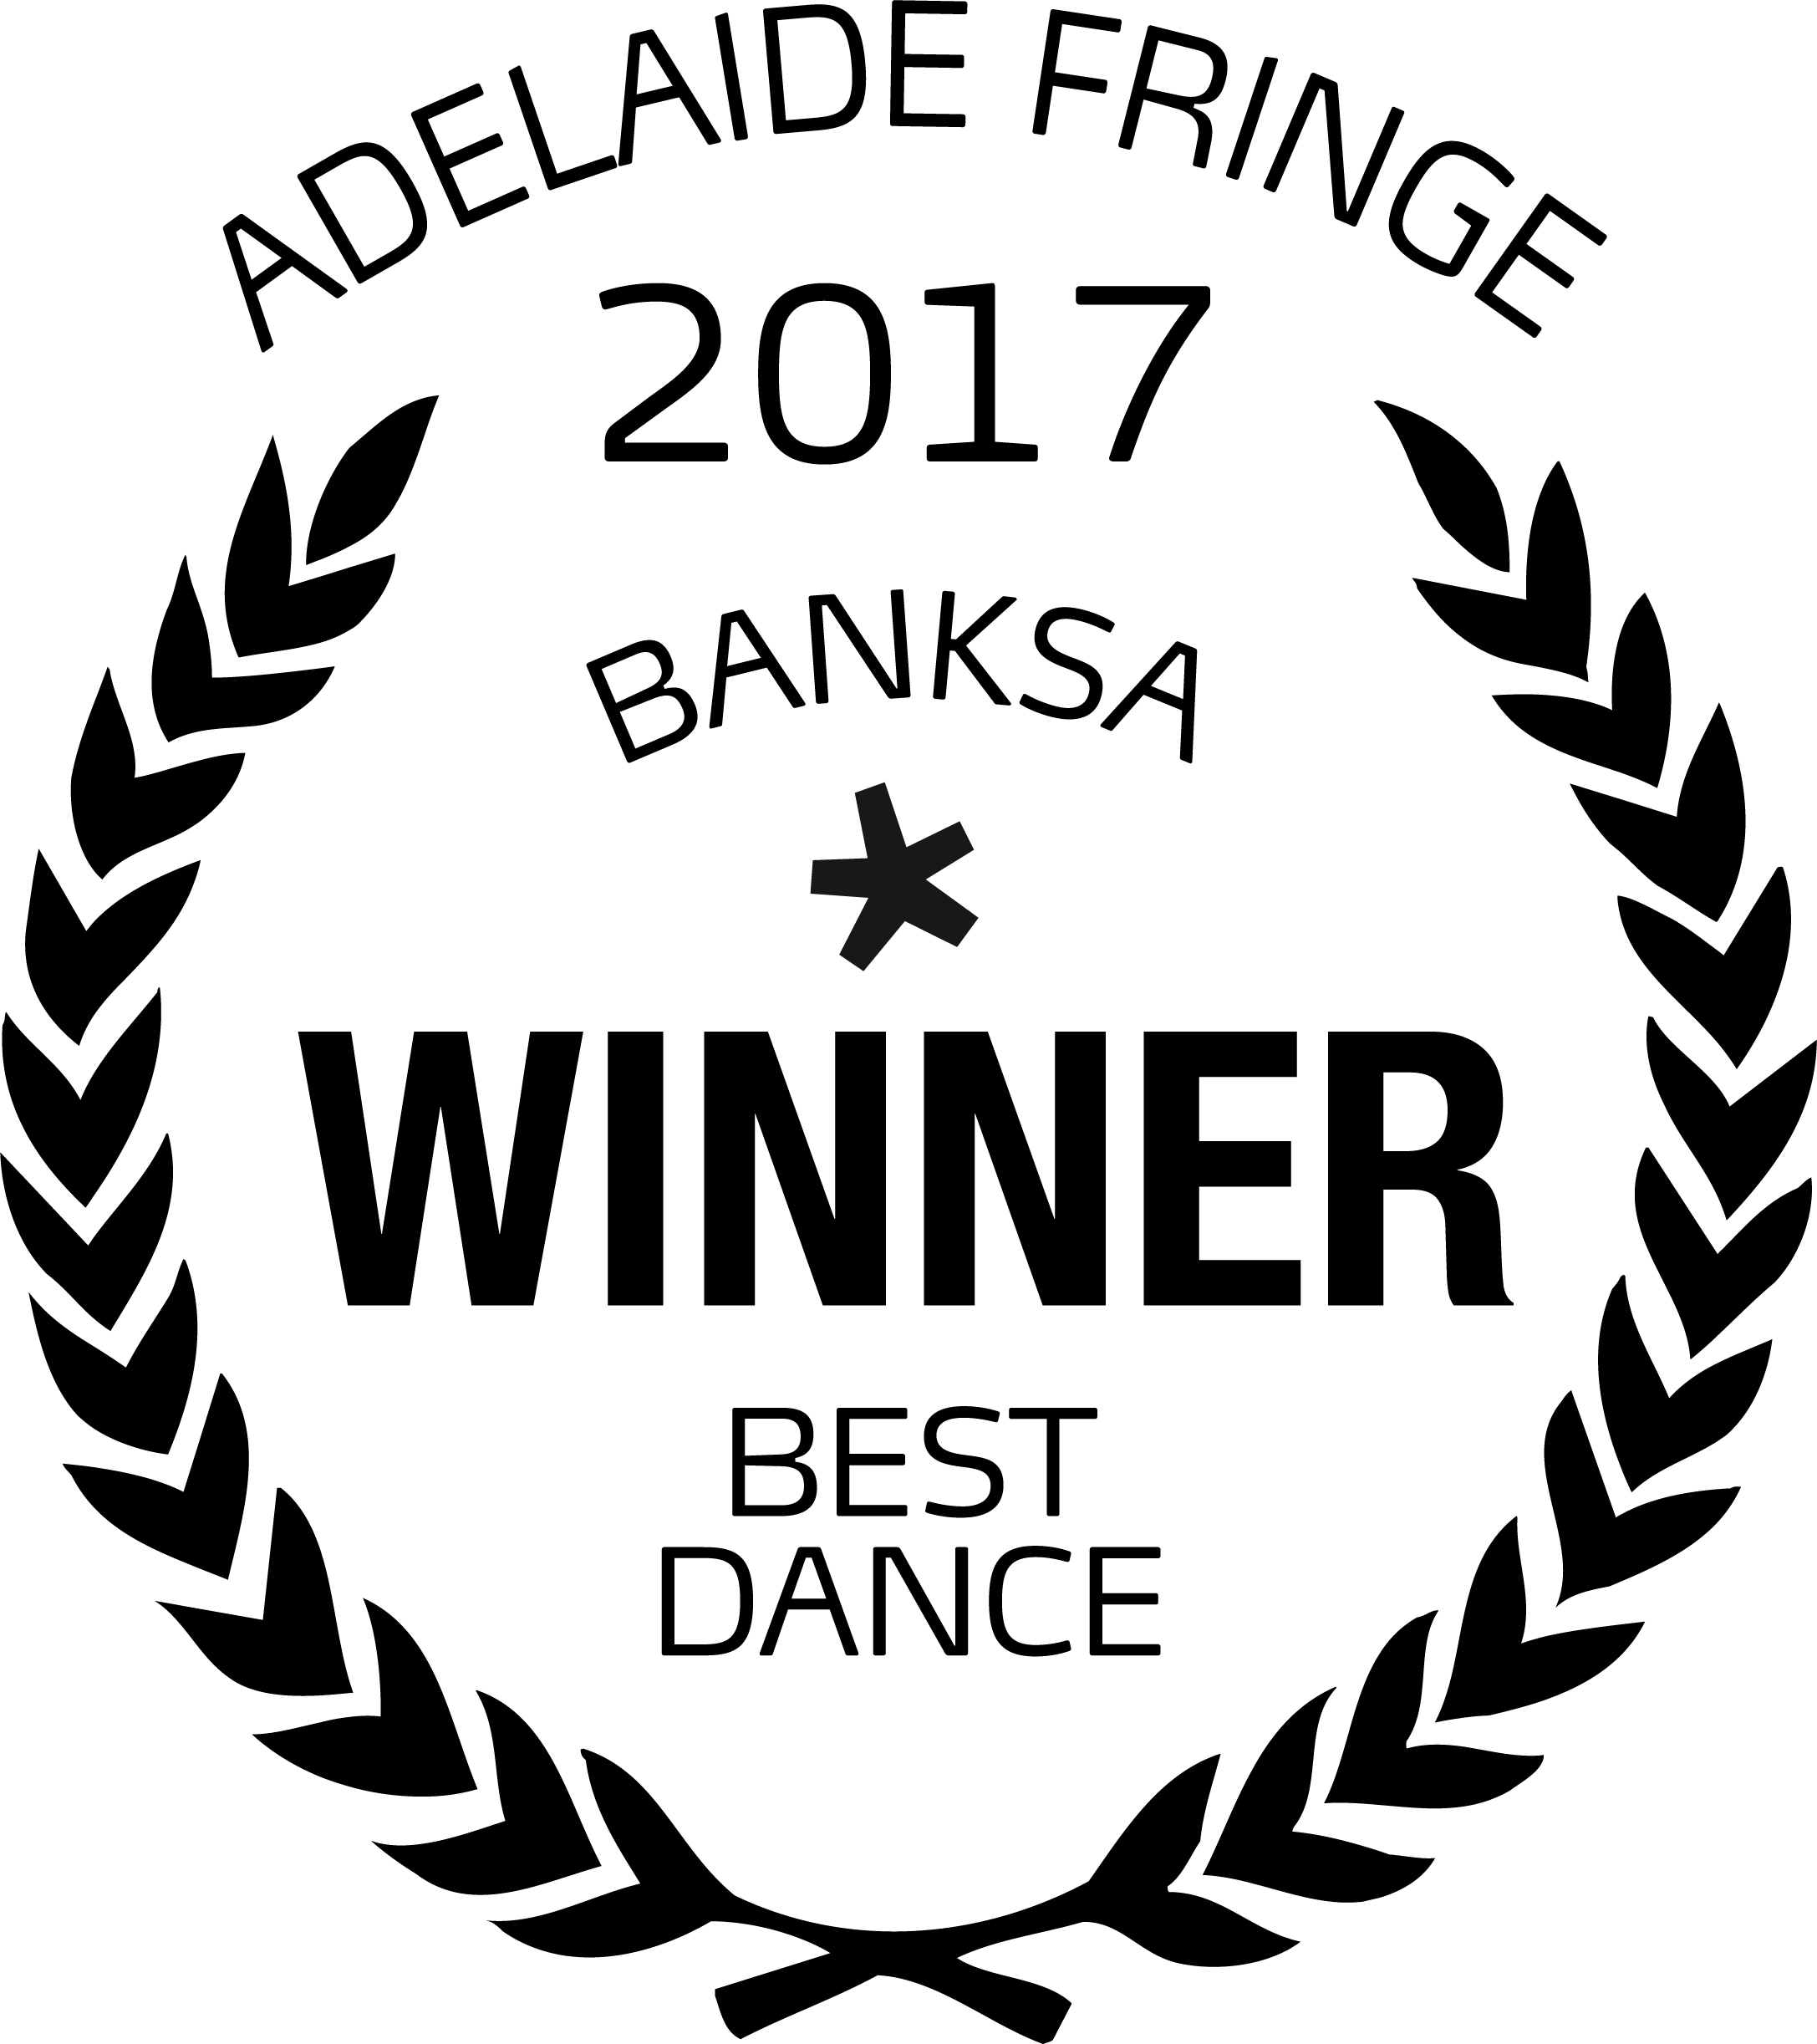 AF WIN BEST DANCE.png